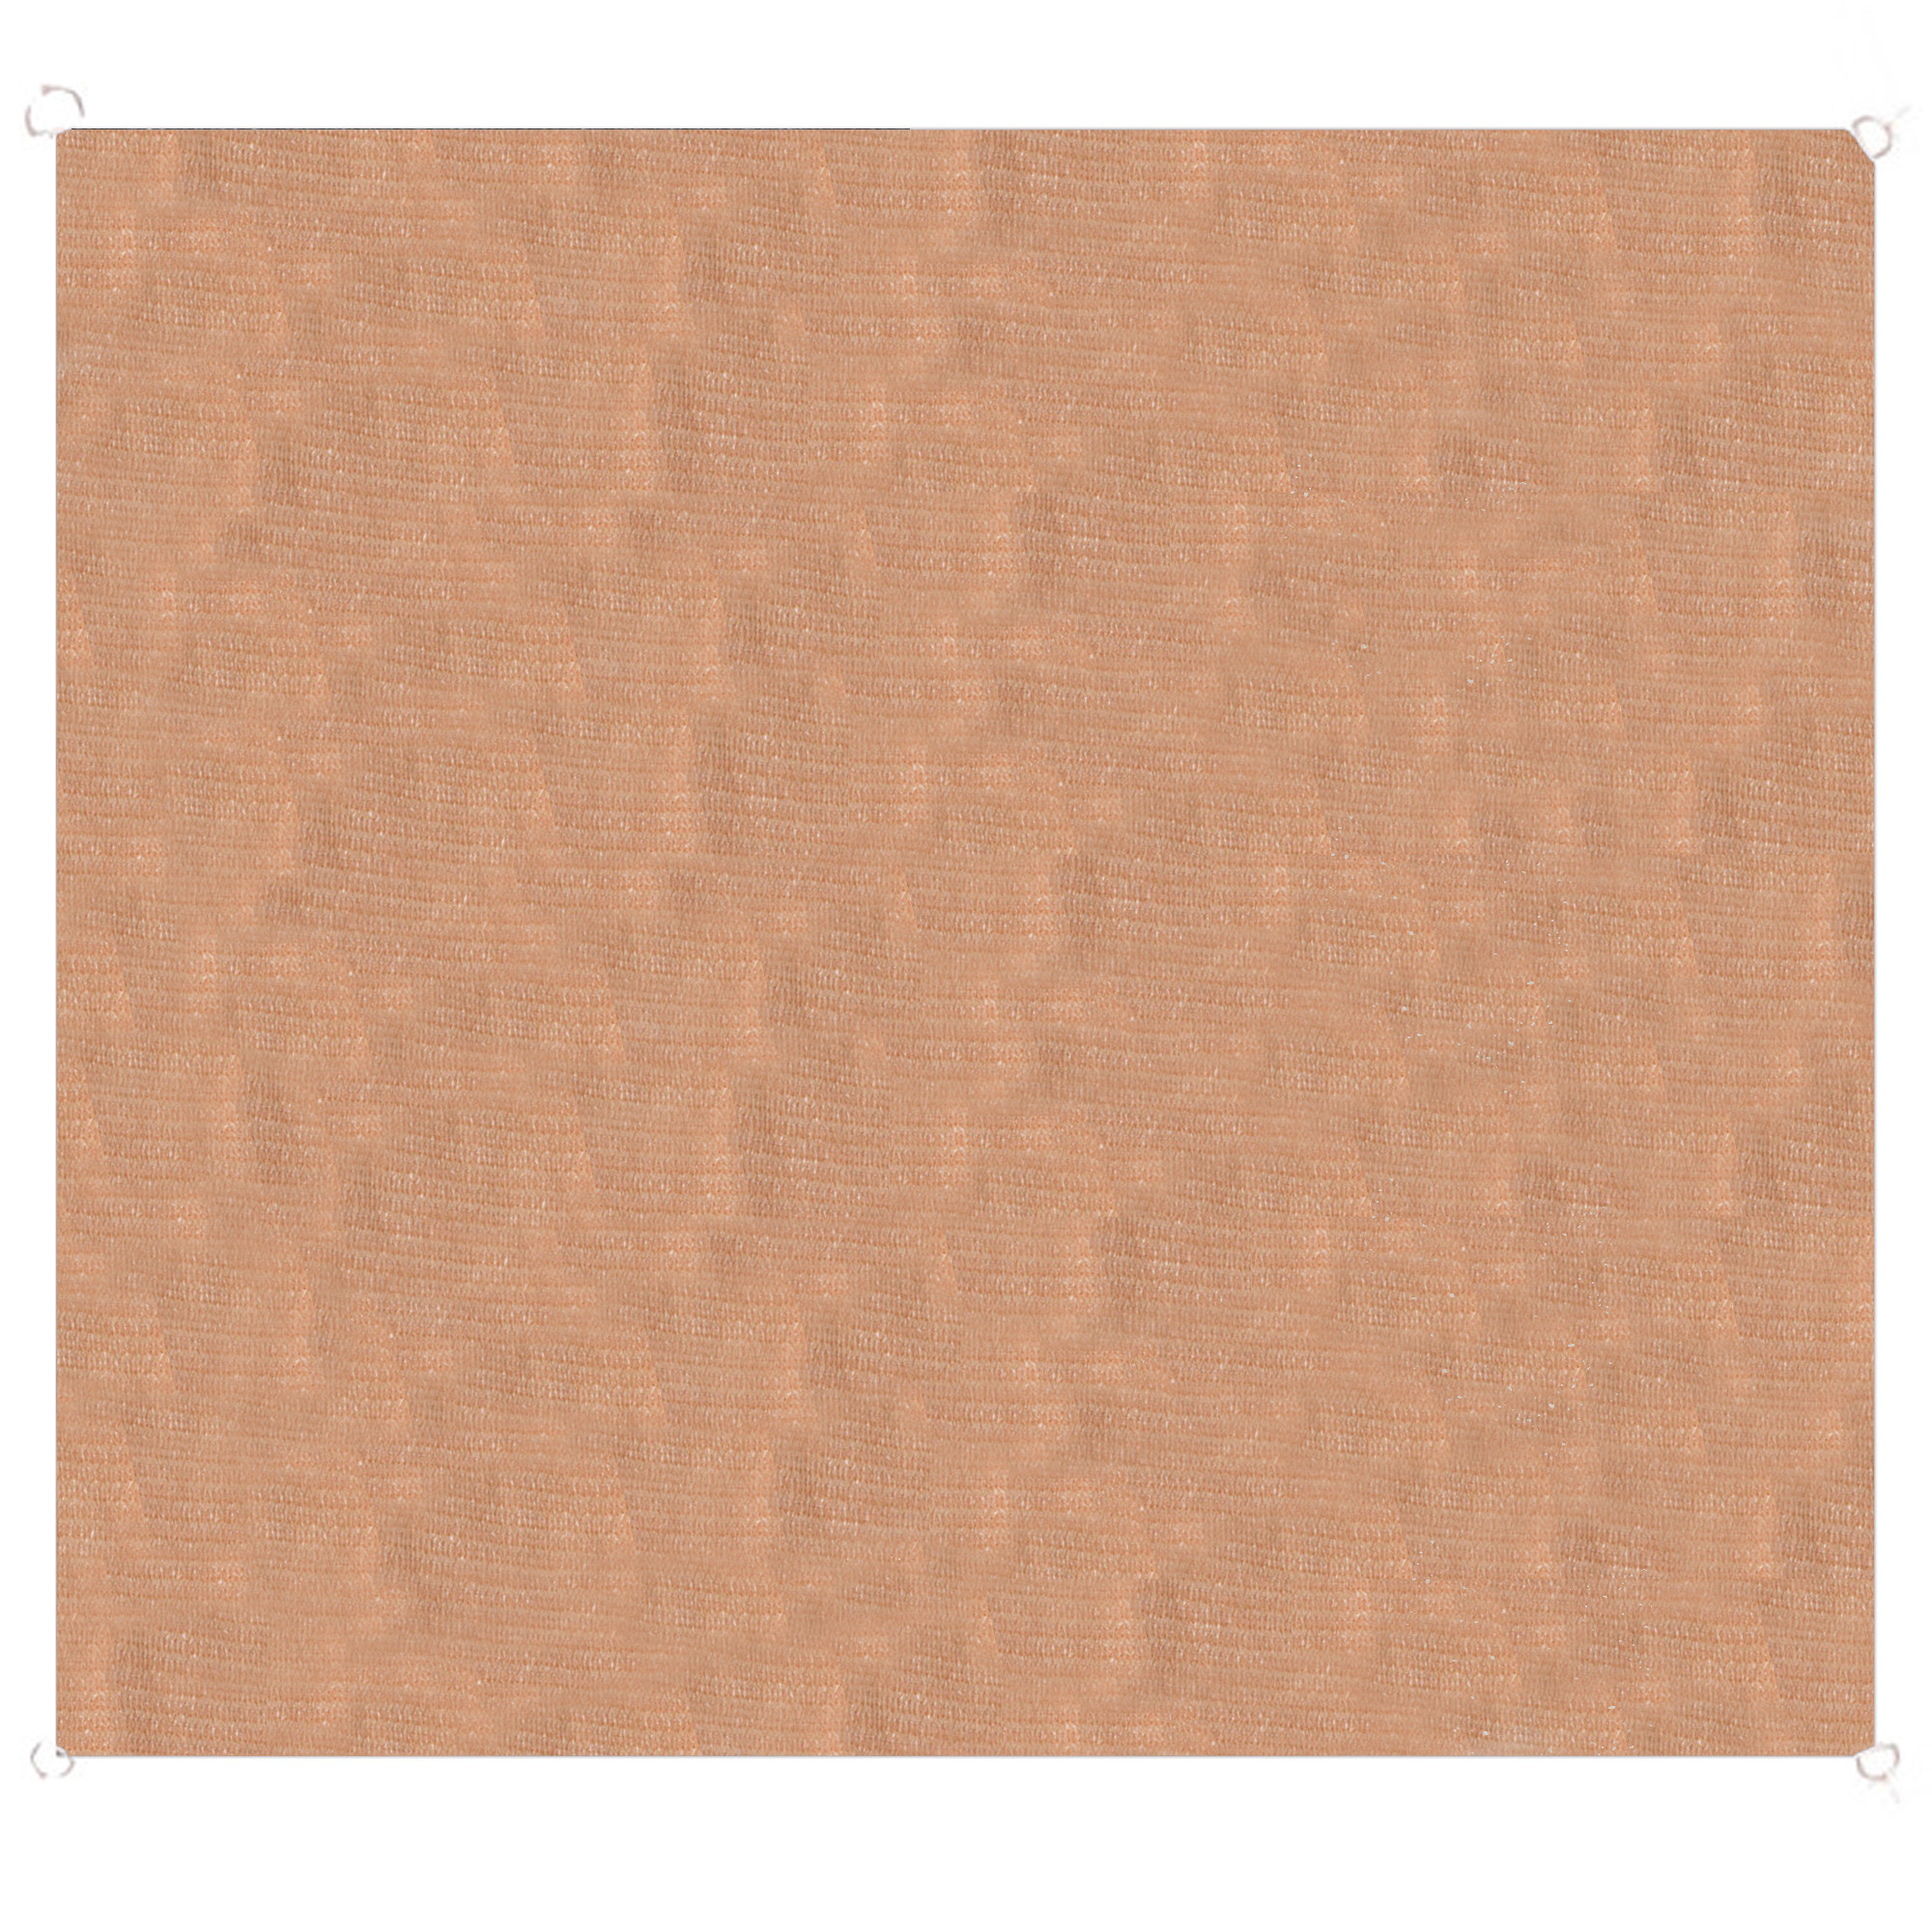 Toile ombrage polyéthylène carrée beige sable 300x300cm